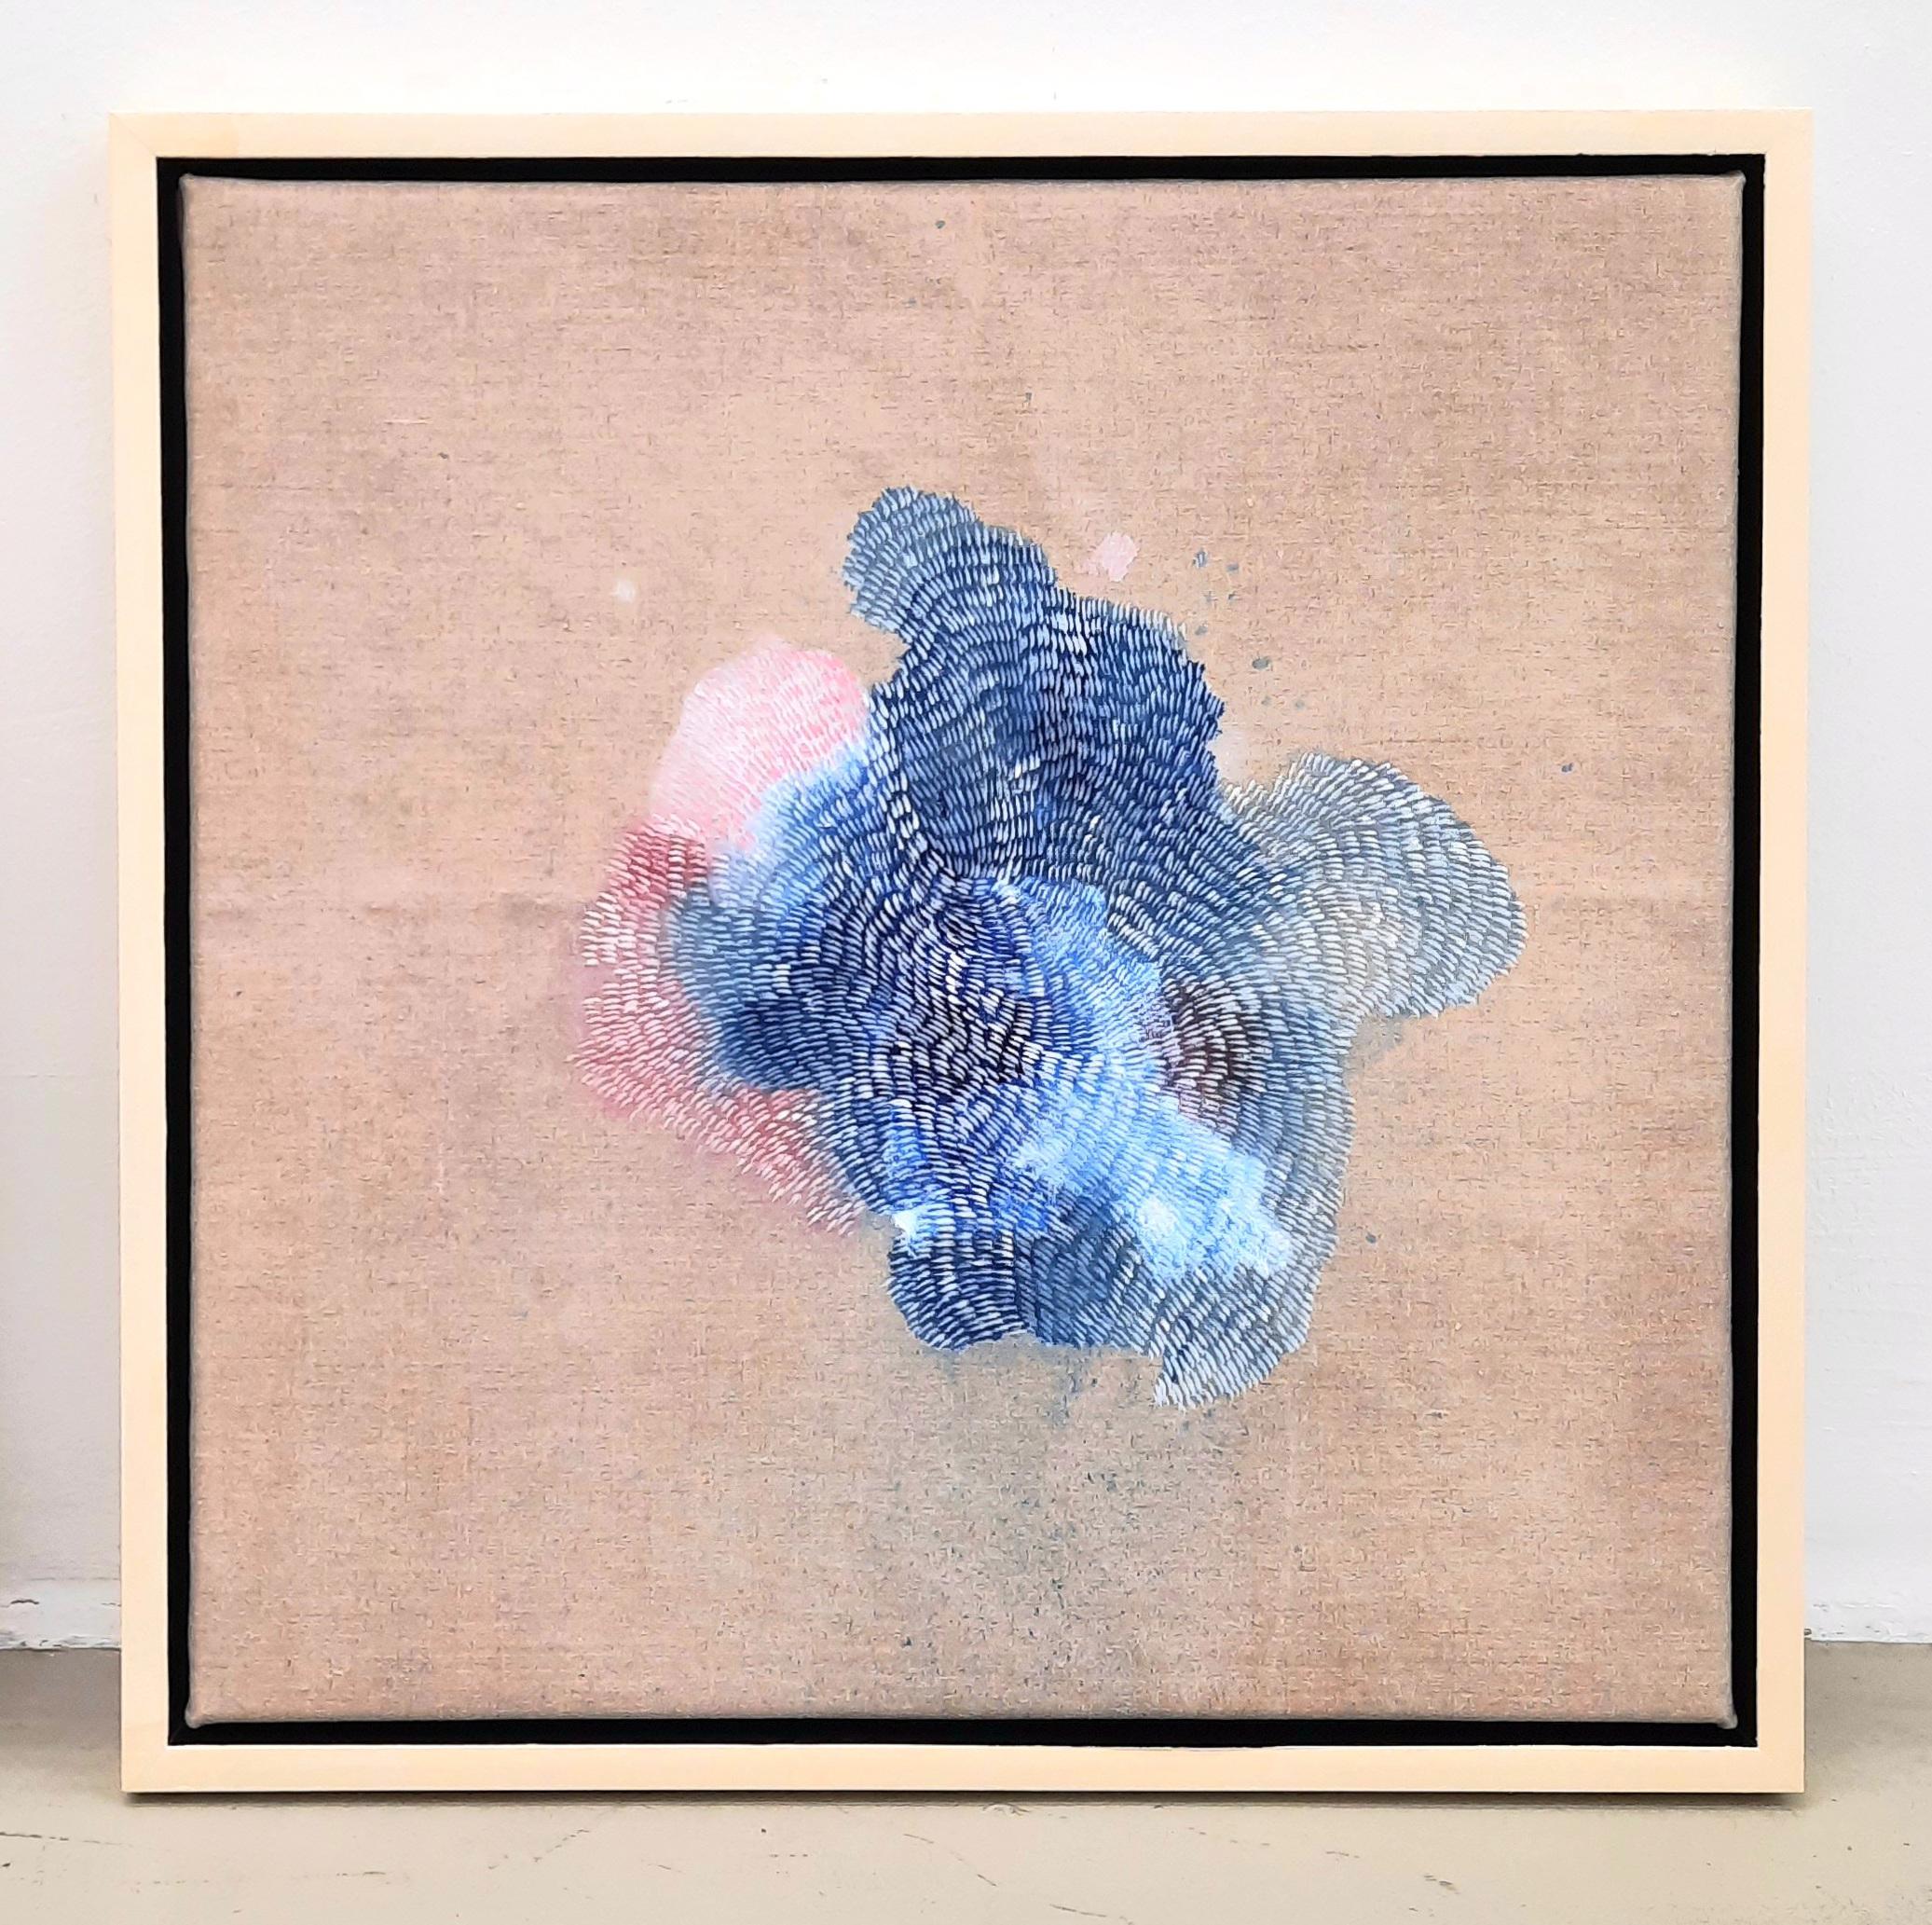 Kenji Lim
Islands of Spray 6 - Contemporary Abstract Blue and Pink Landscape Painting
Acryl auf Leinen, gerahmt
54 cm x 54 cm
Einzigartige Kopie

Kenji Lim ist ein britischer Künstler, der in Essex lebt und 1980 in Singapur geboren wurde. Er